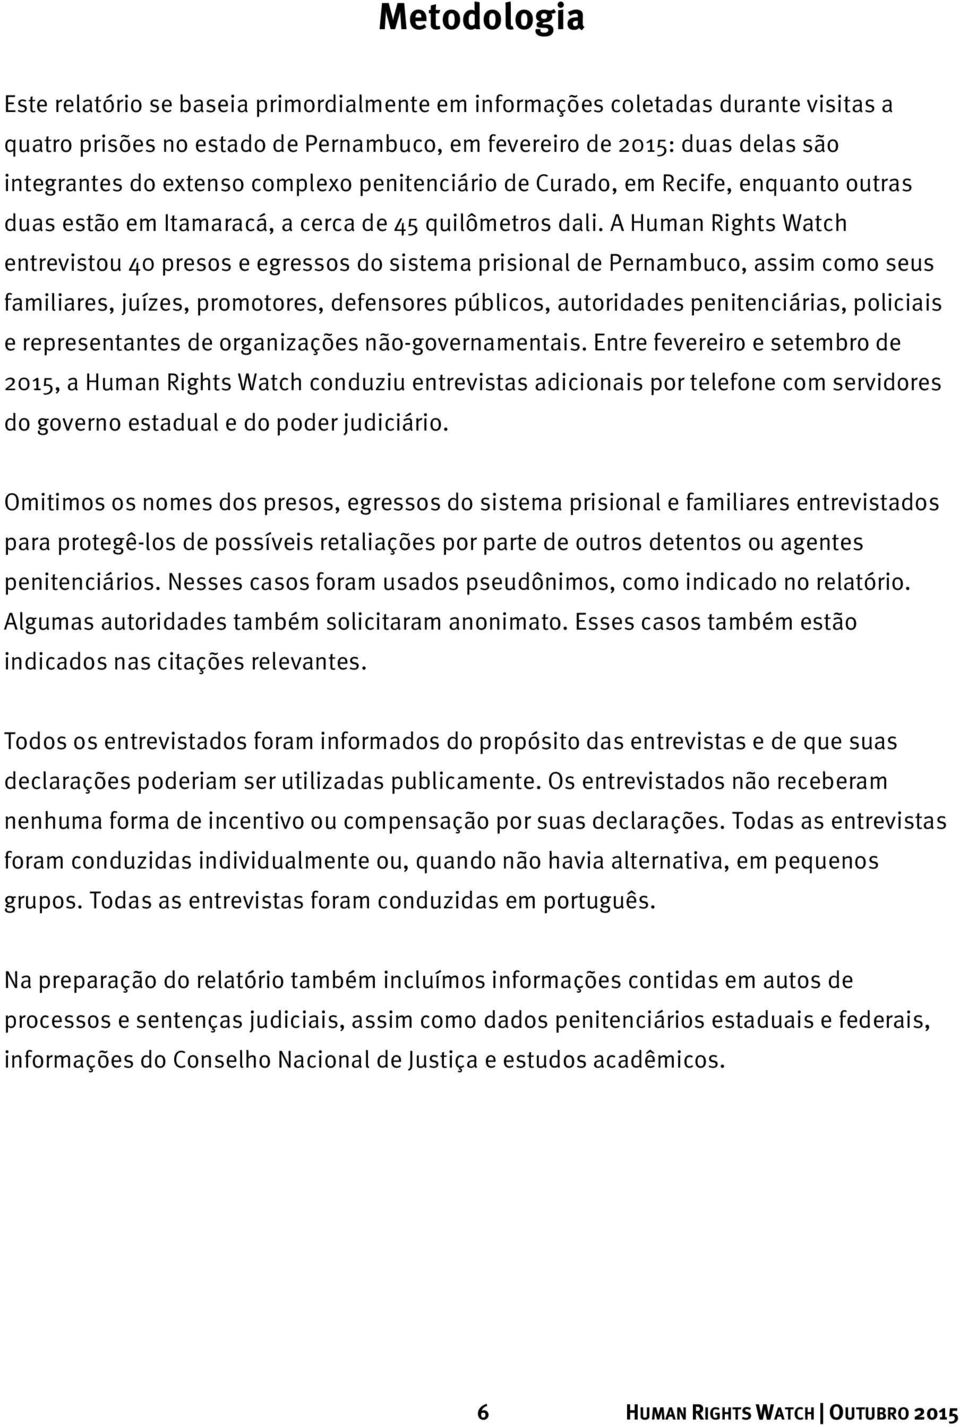 A Human Rights Watch entrevistou 40 presos e egressos do sistema prisional de Pernambuco, assim como seus familiares, juízes, promotores, defensores públicos, autoridades penitenciárias, policiais e